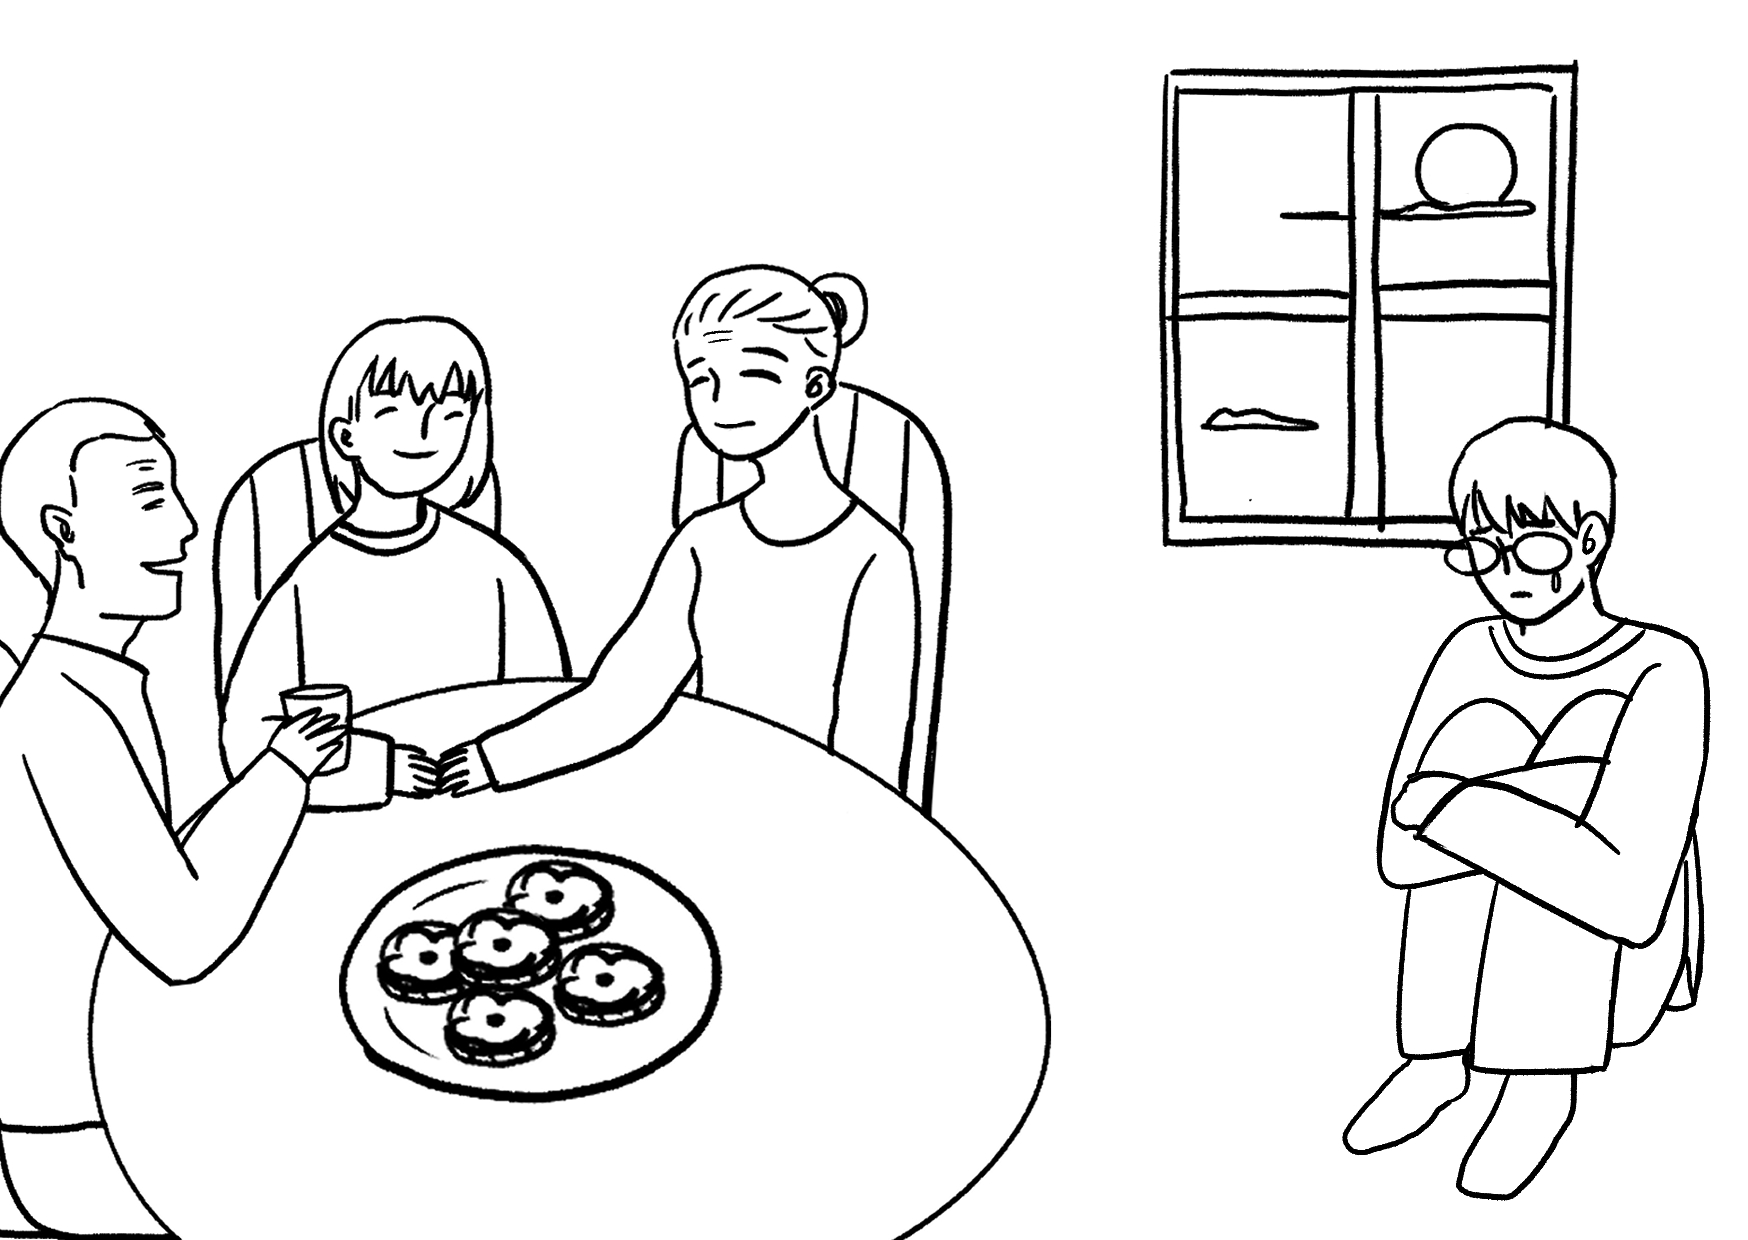 家人团聚吃月饼简笔画图片